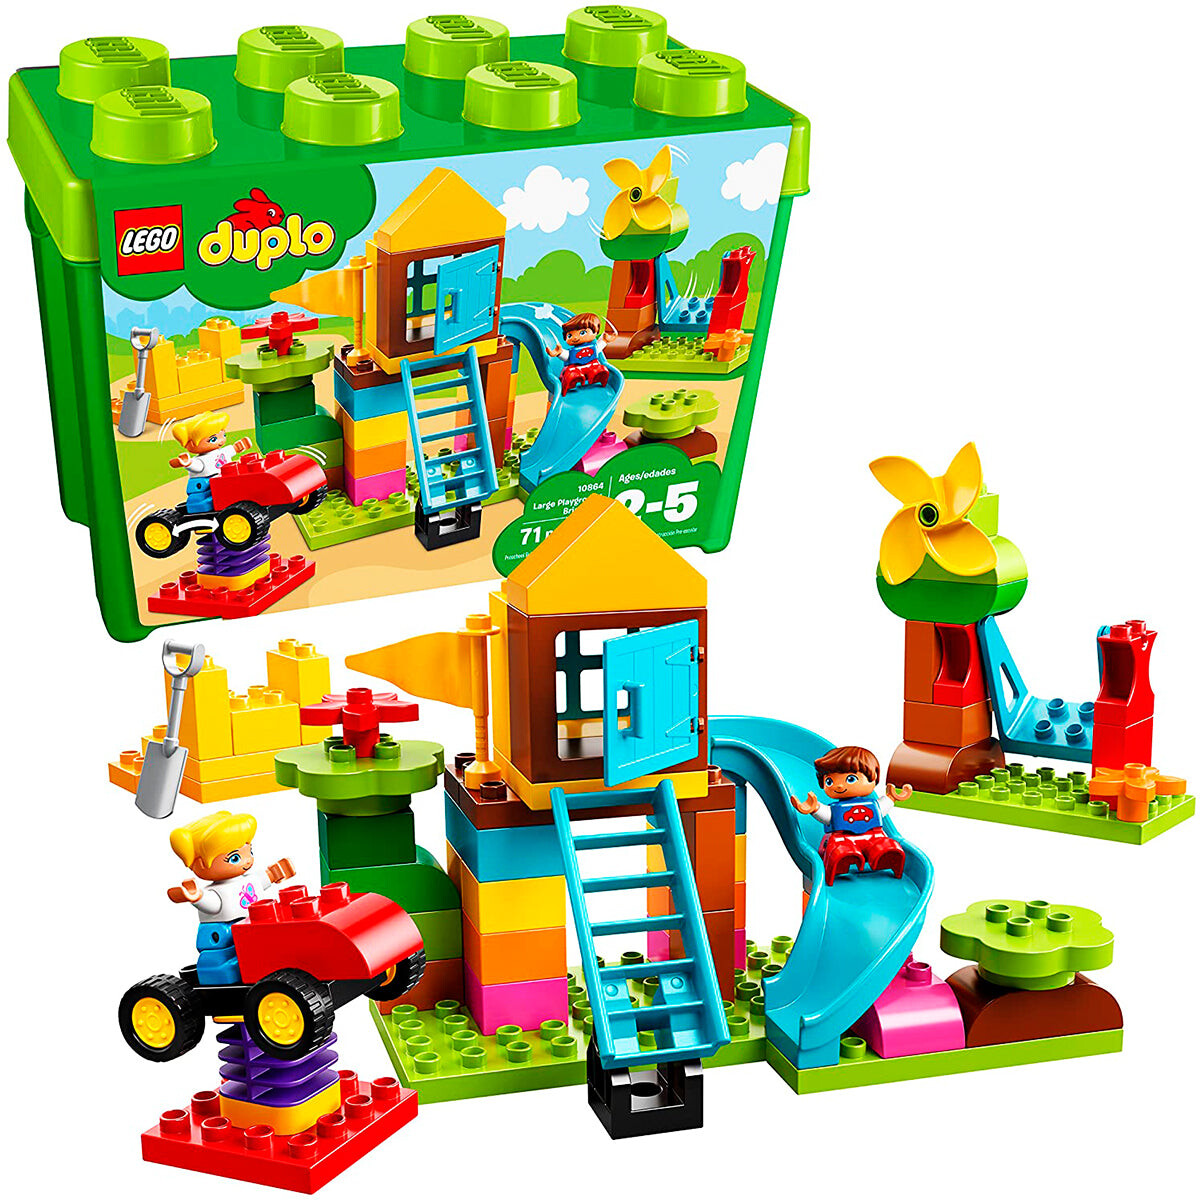 Lego Duplo 10864 Zona De Juegos 71pcs En Caja Niños 